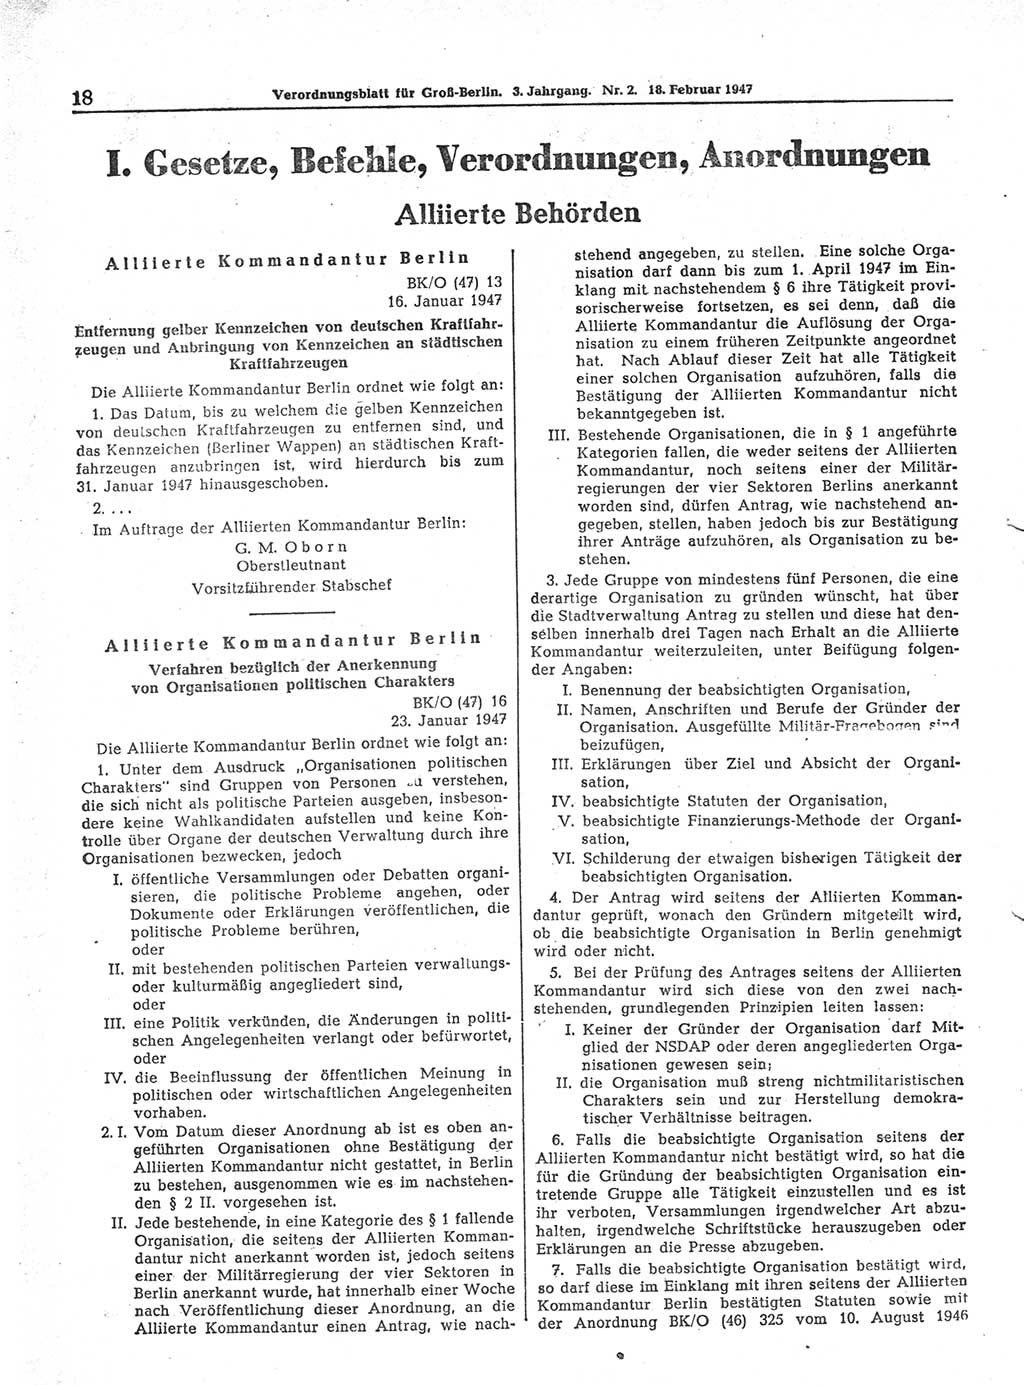 Verordnungsblatt (VOBl.) für Groß-Berlin 1947, Seite 18 (VOBl. Bln. 1947, S. 18)